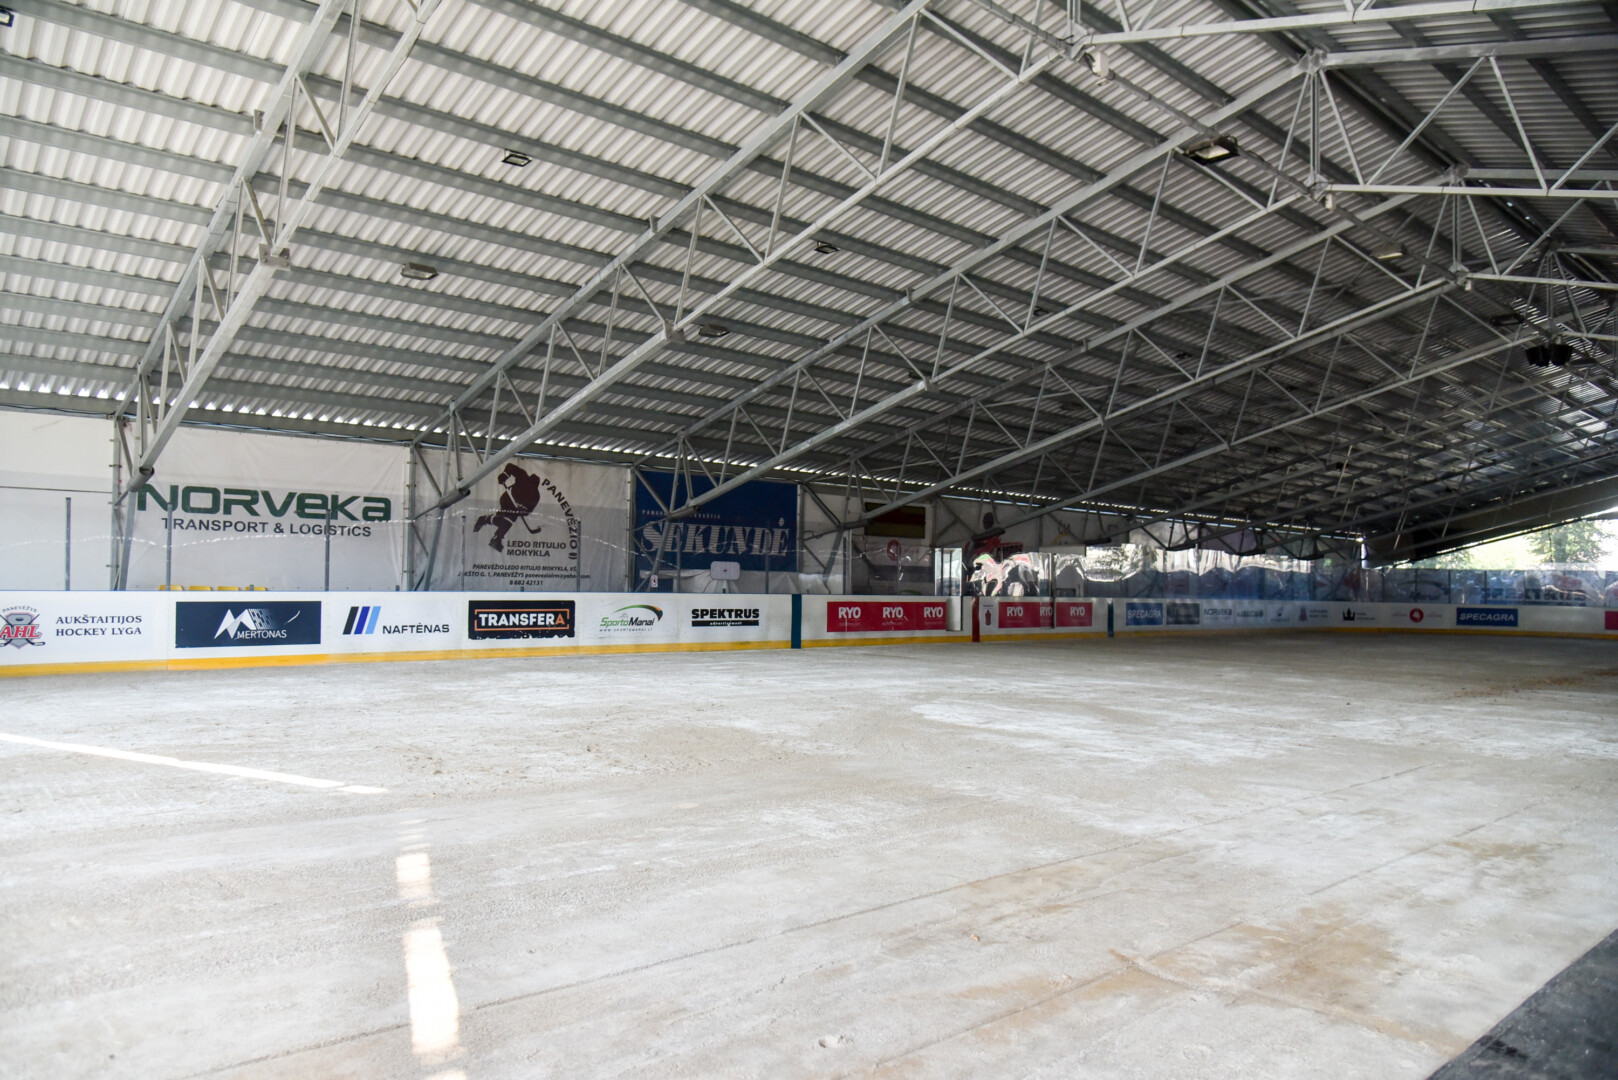 Dėl baseino statybų šiemet ledo arena lankytojų nepriima, tad ieškoma būdų, kaip įrengti čiuožyklą po atviru dangumi. P. ŽIDONIO nuotr.